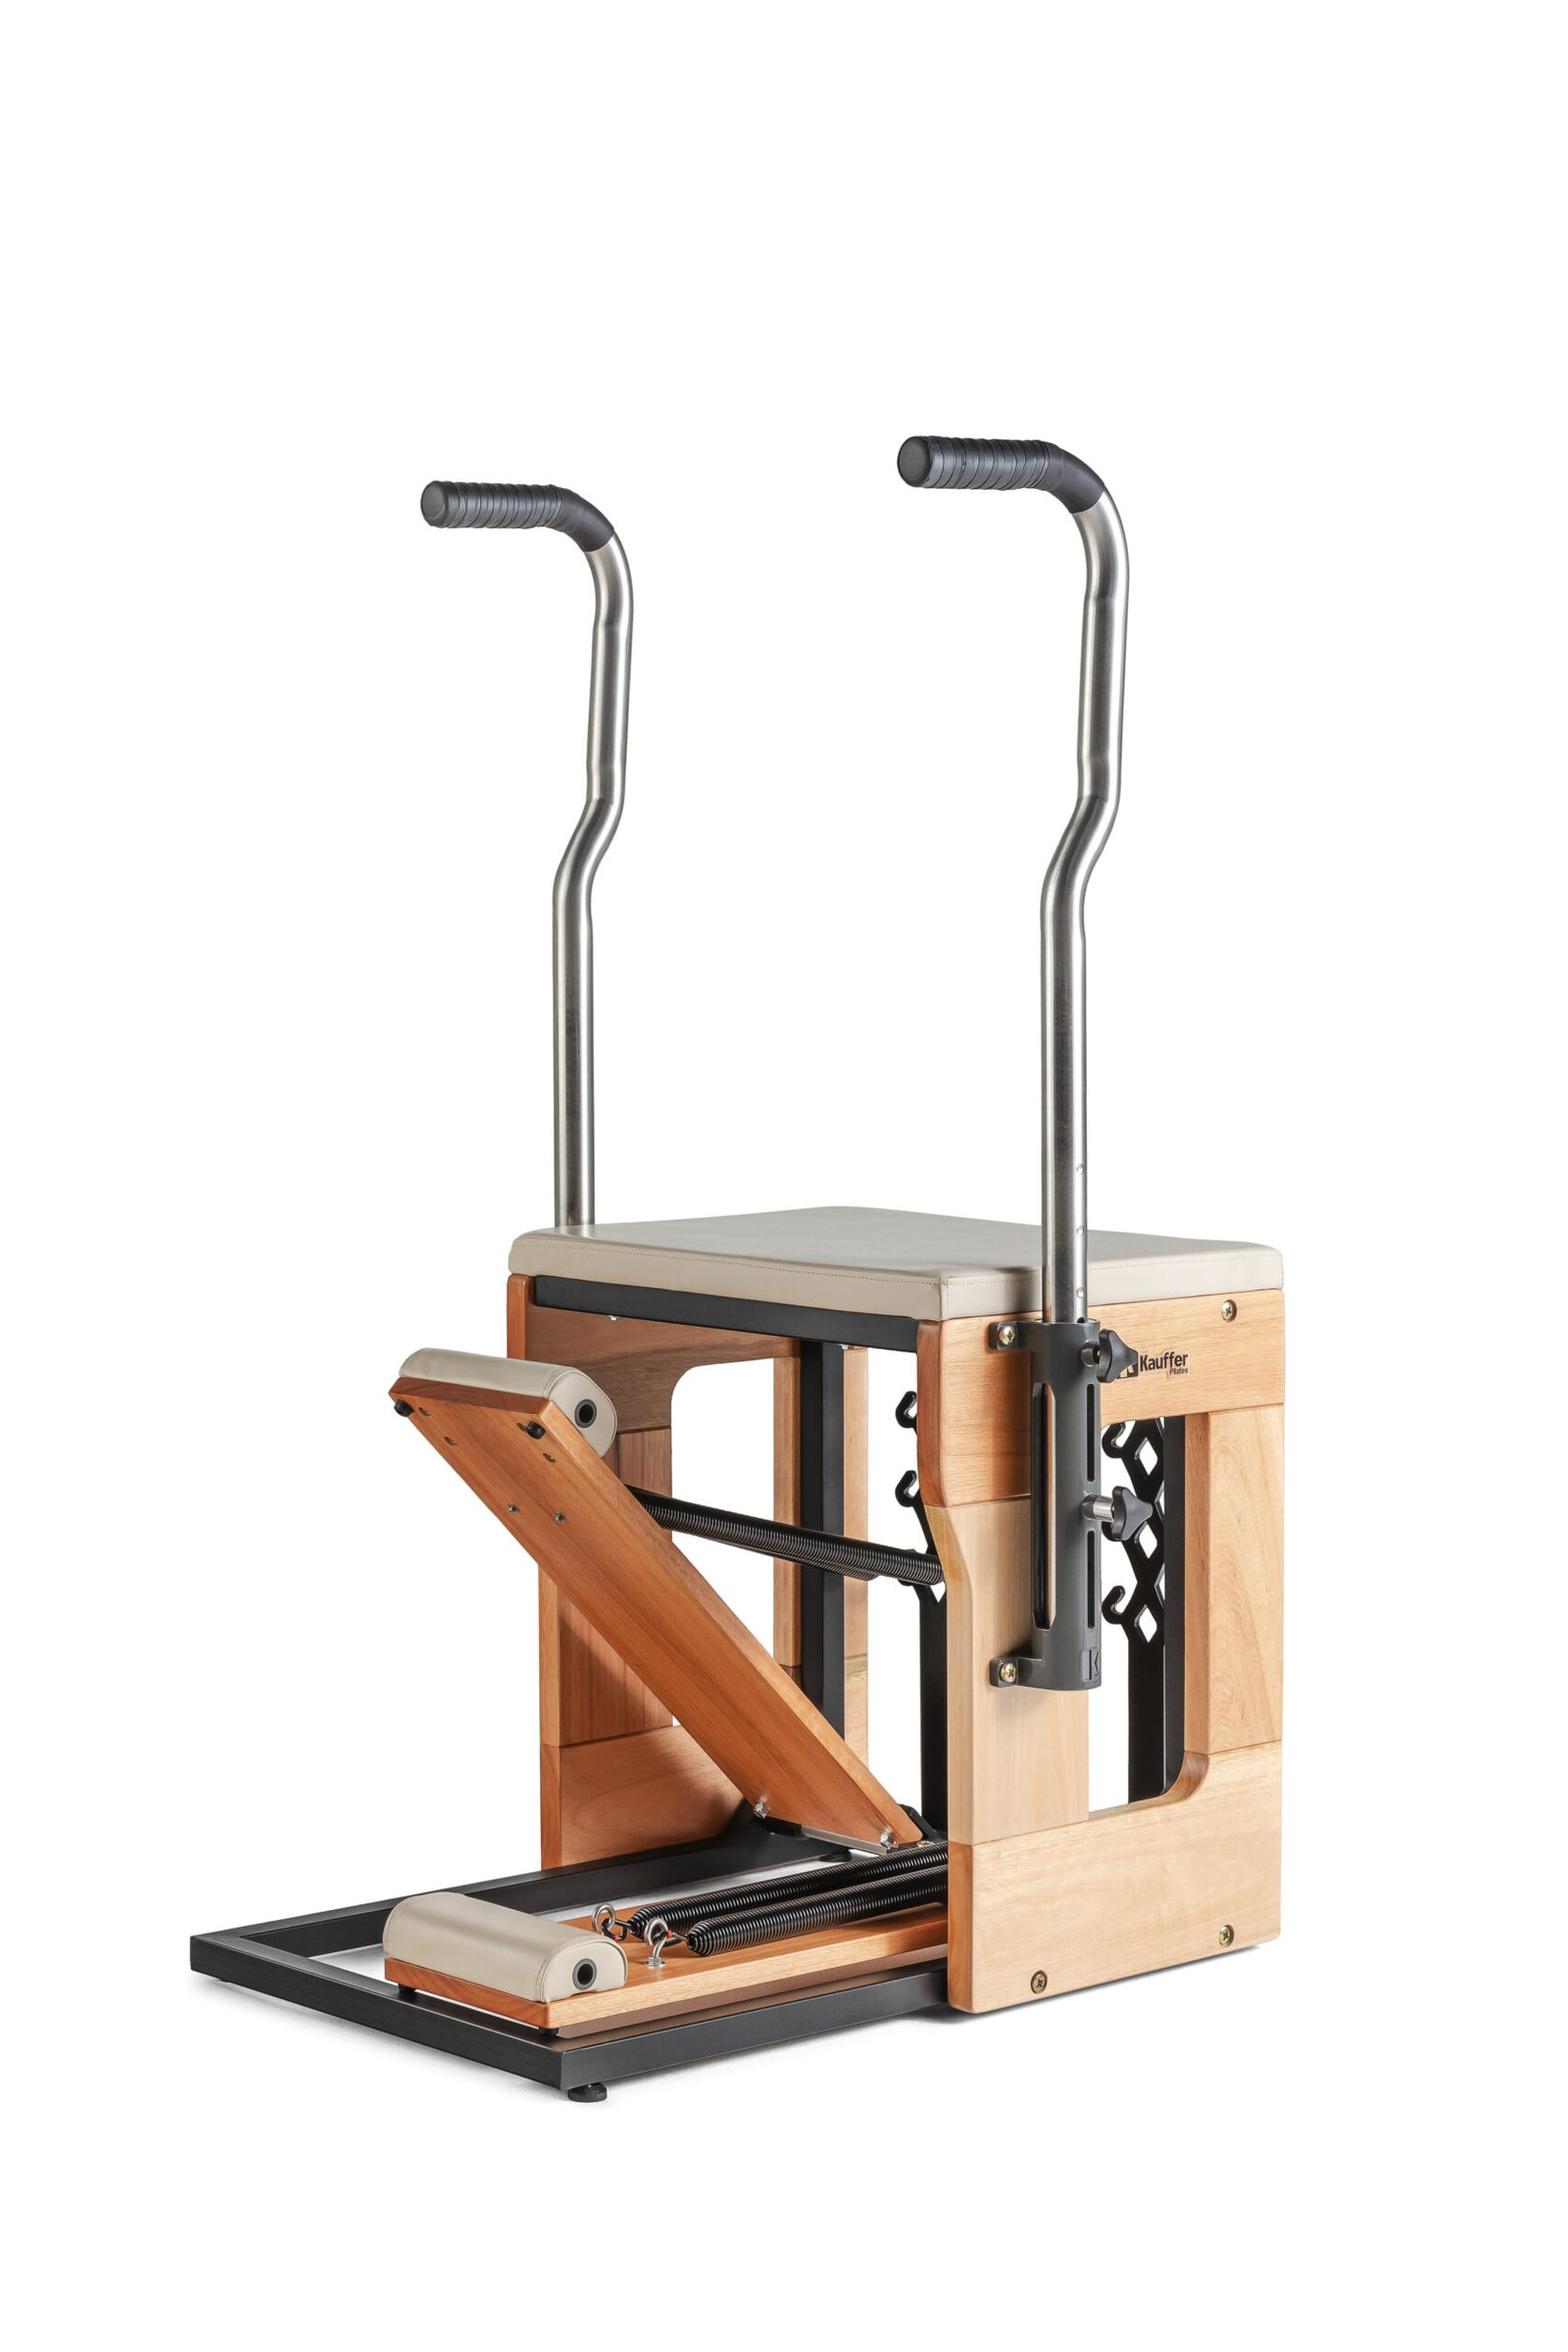 Kauffer Pilates - Os pedais da Step Chair são feitos em EVA, com  revestimento em couríssimo náutico, resultando em uma peça anatômica e  confortável para os pés e mãos. . Com os